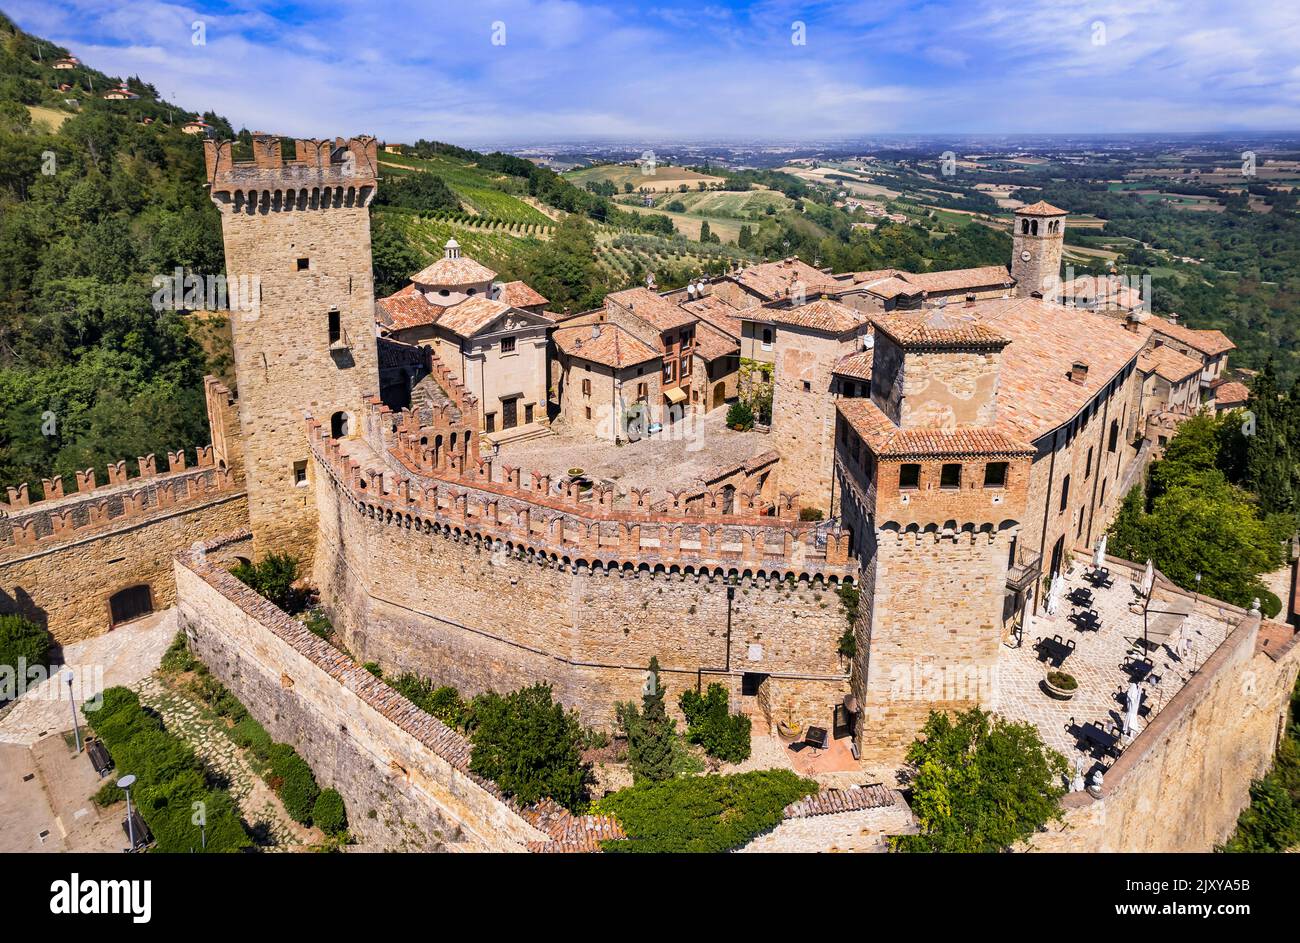 Das mittelalterliche Dorf Vigoleno Luftbild. Märchenschloss und kleines charmantes Dorf. Emilia Romagna, Italien Reisen und Sehenswürdigkeiten Stockfoto